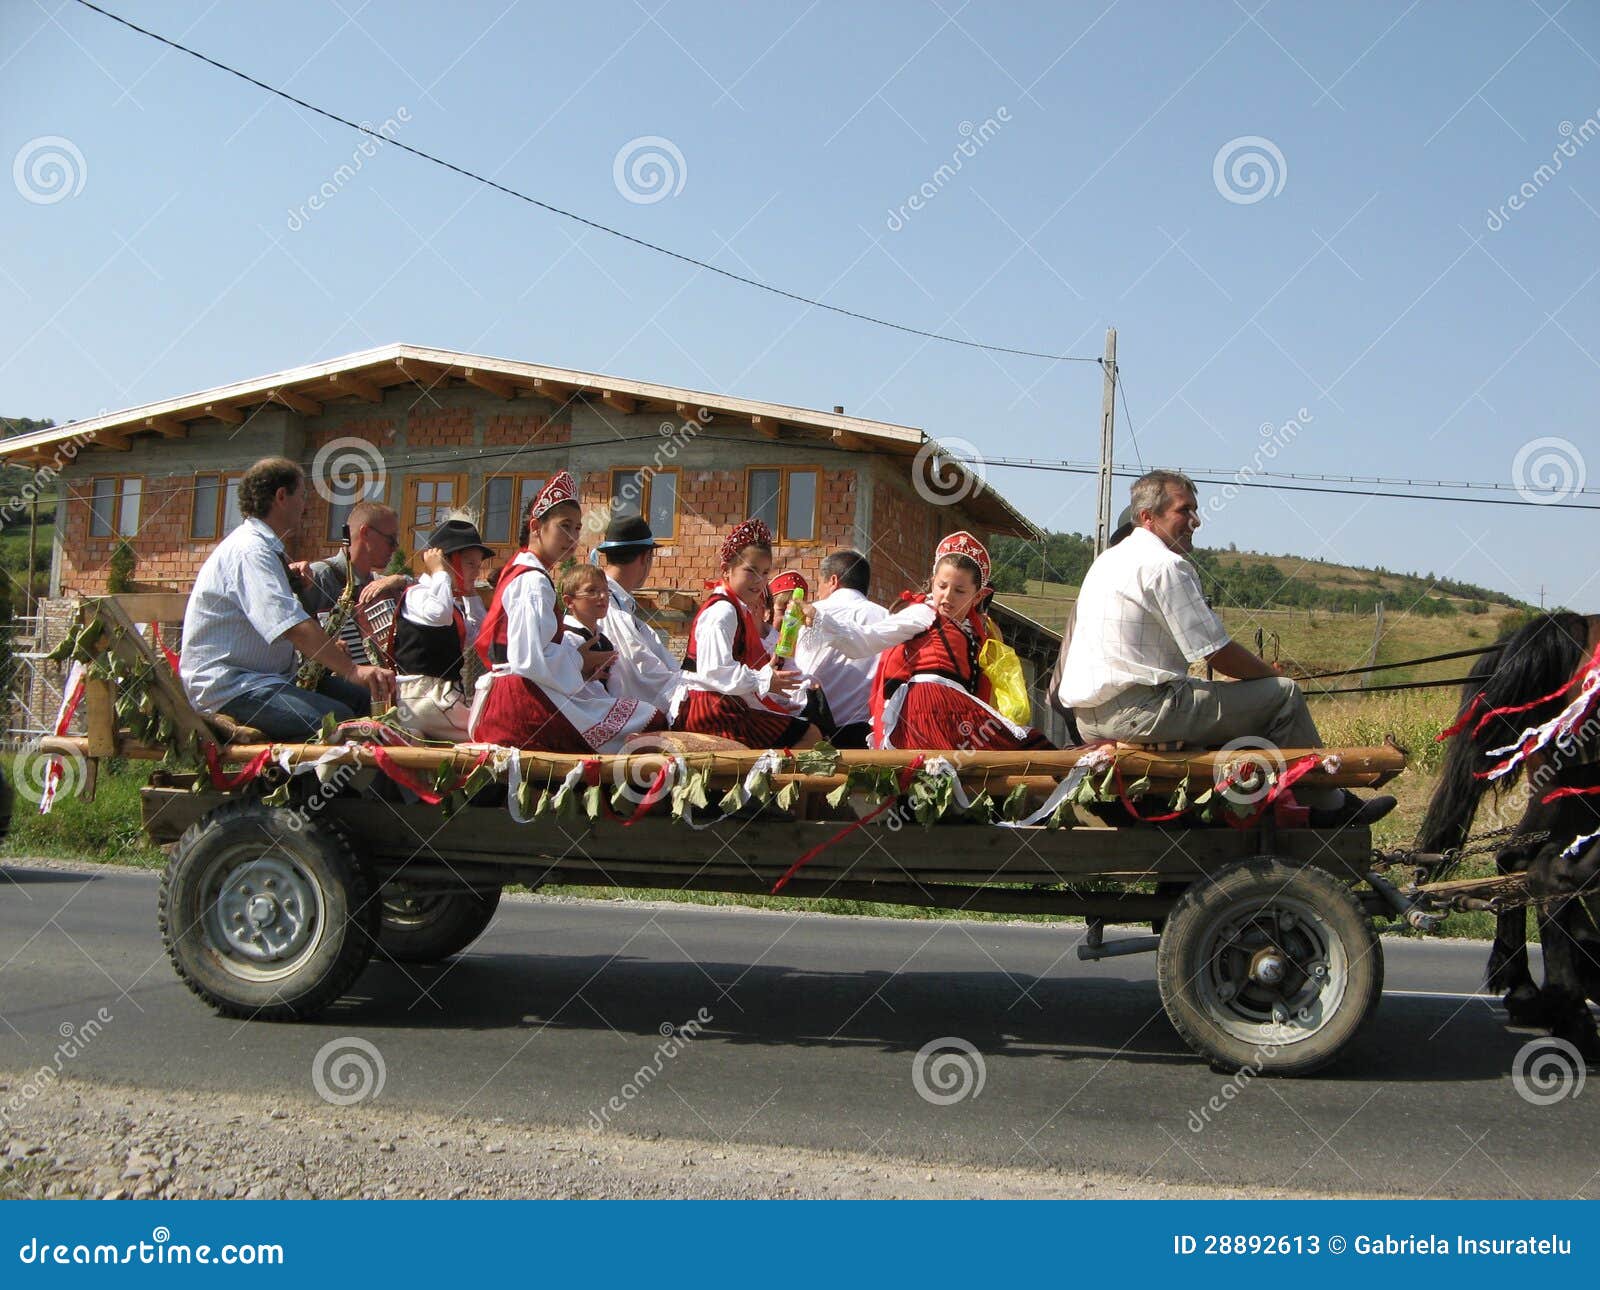 Tradizione nel distretto di Harghita. ZETEA, HARGHITA/ROMANIA - 7 SETTEMBRE: Giovani che eseguono la tradizione di nozze il 7 settembre 2008 nel villaggio il distretto di Harghita, Romania di Zetea.